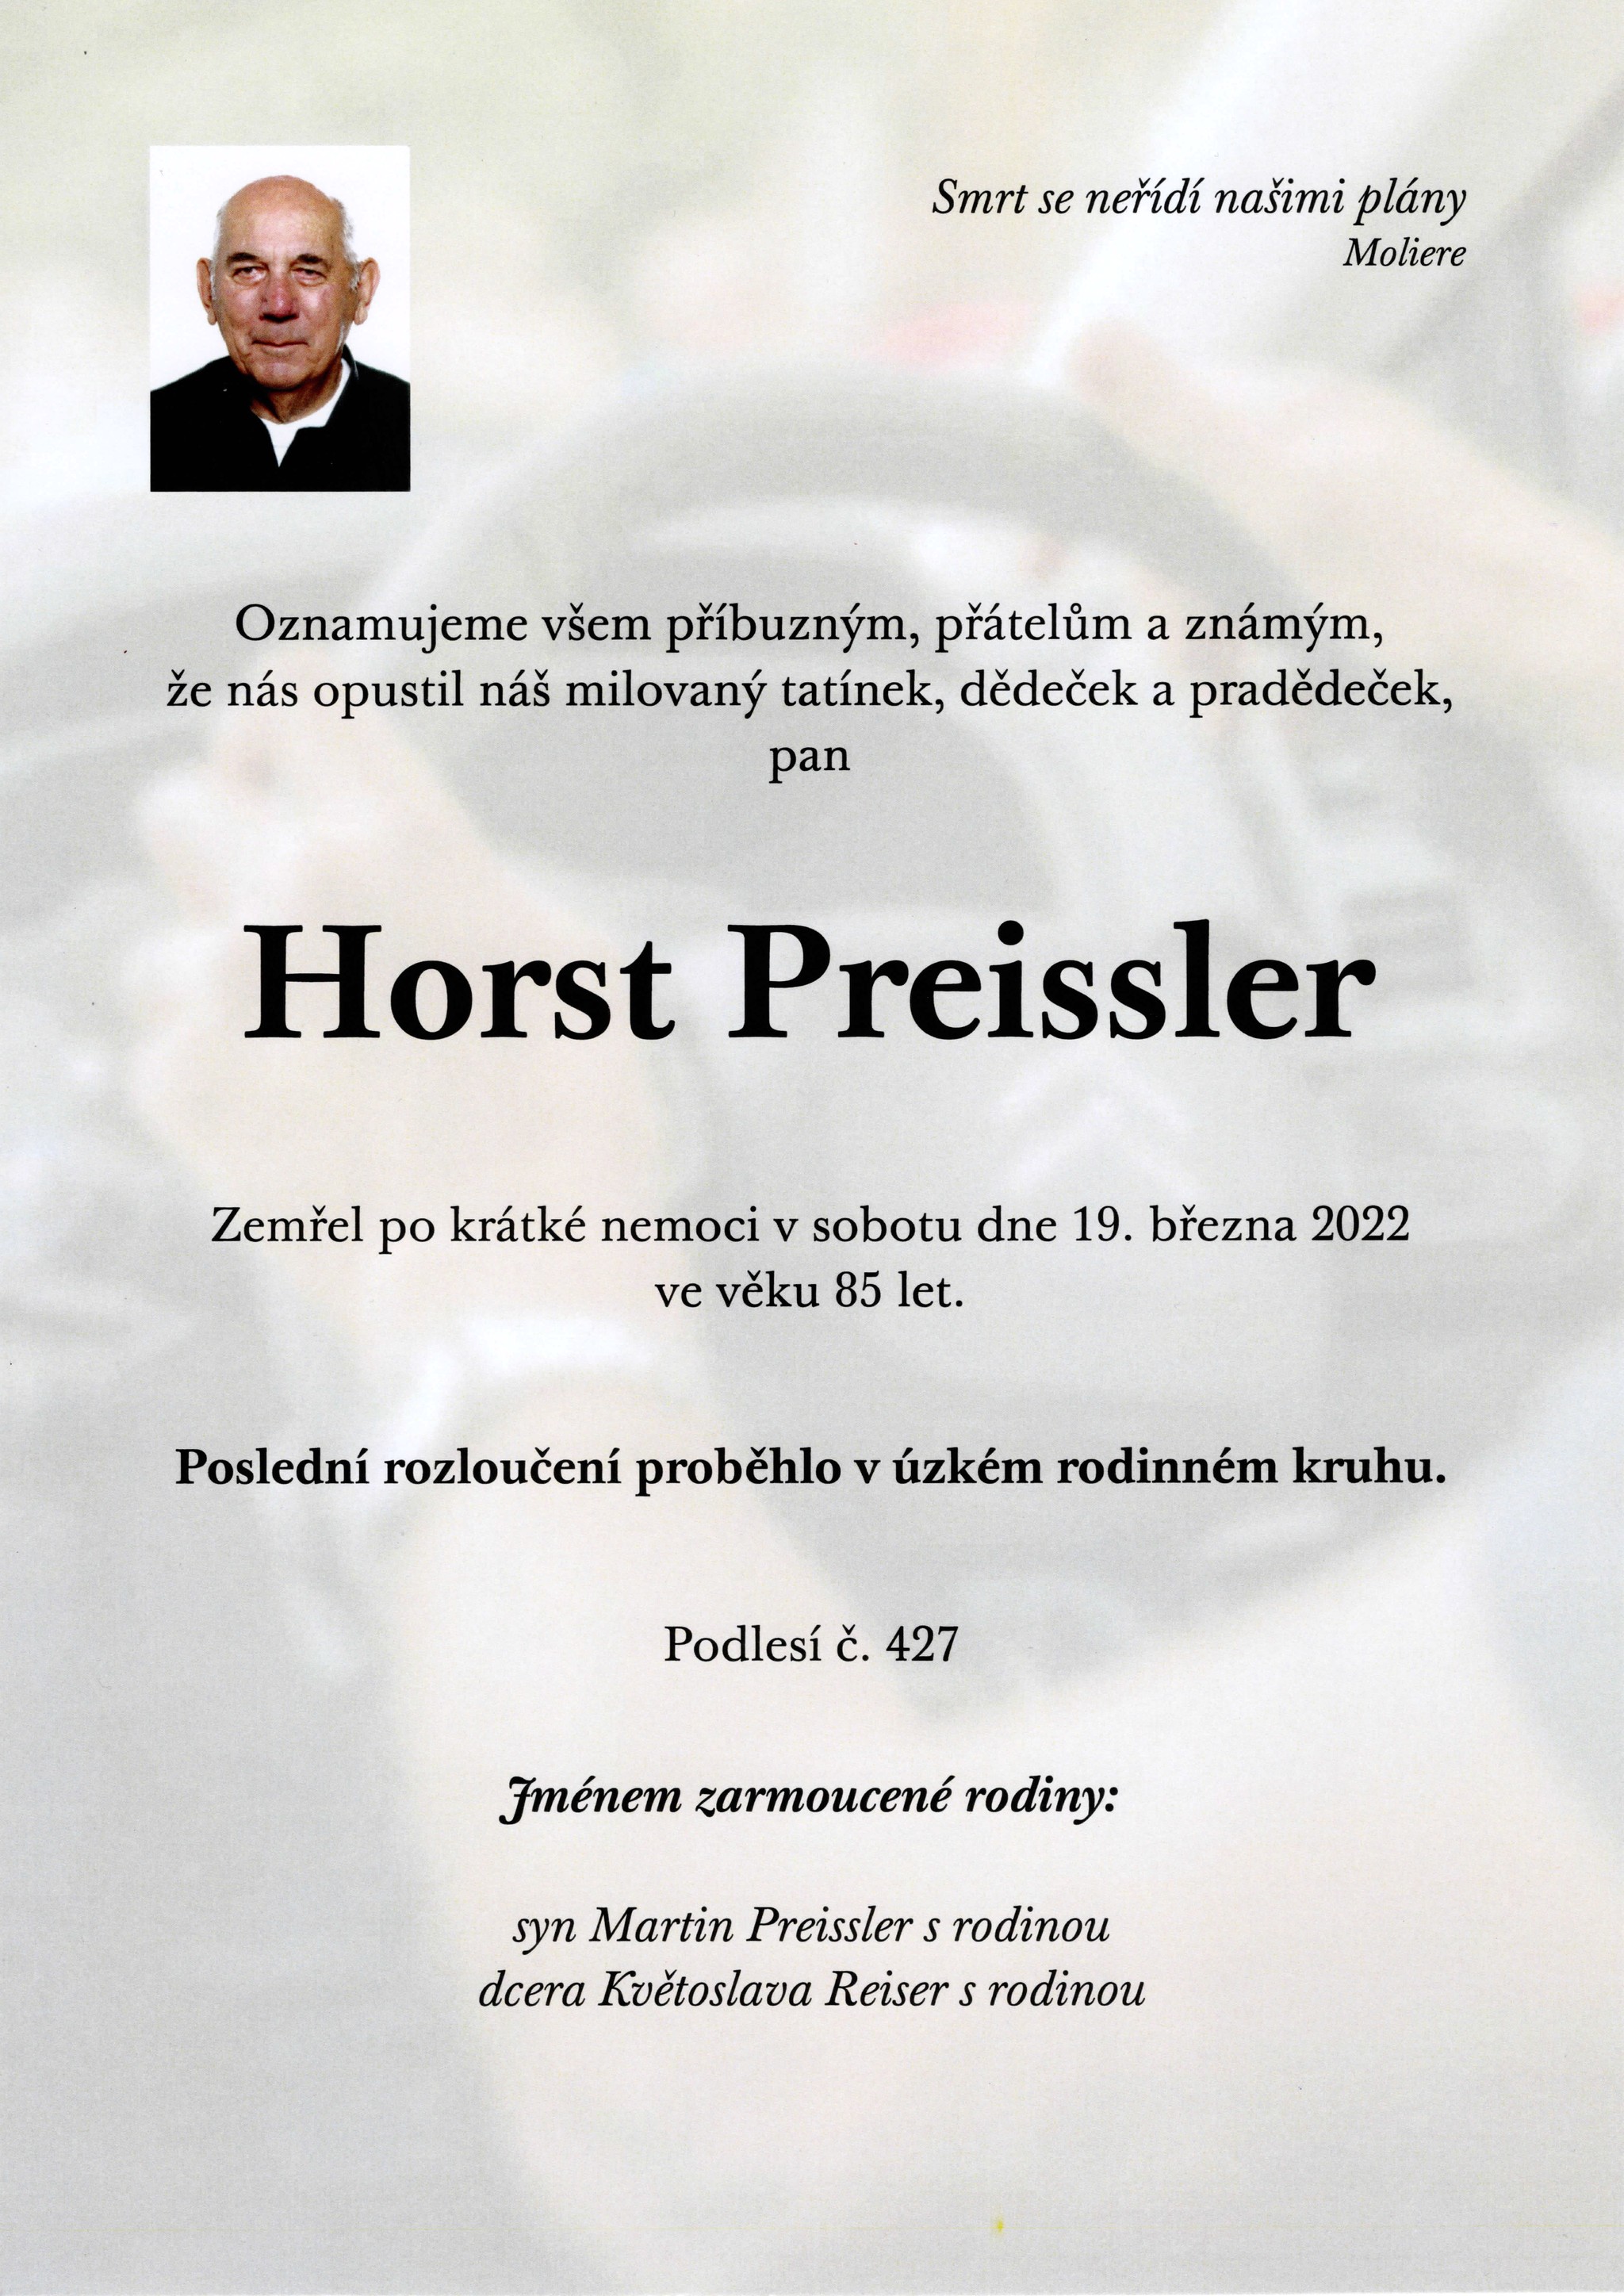 Horst Preissler